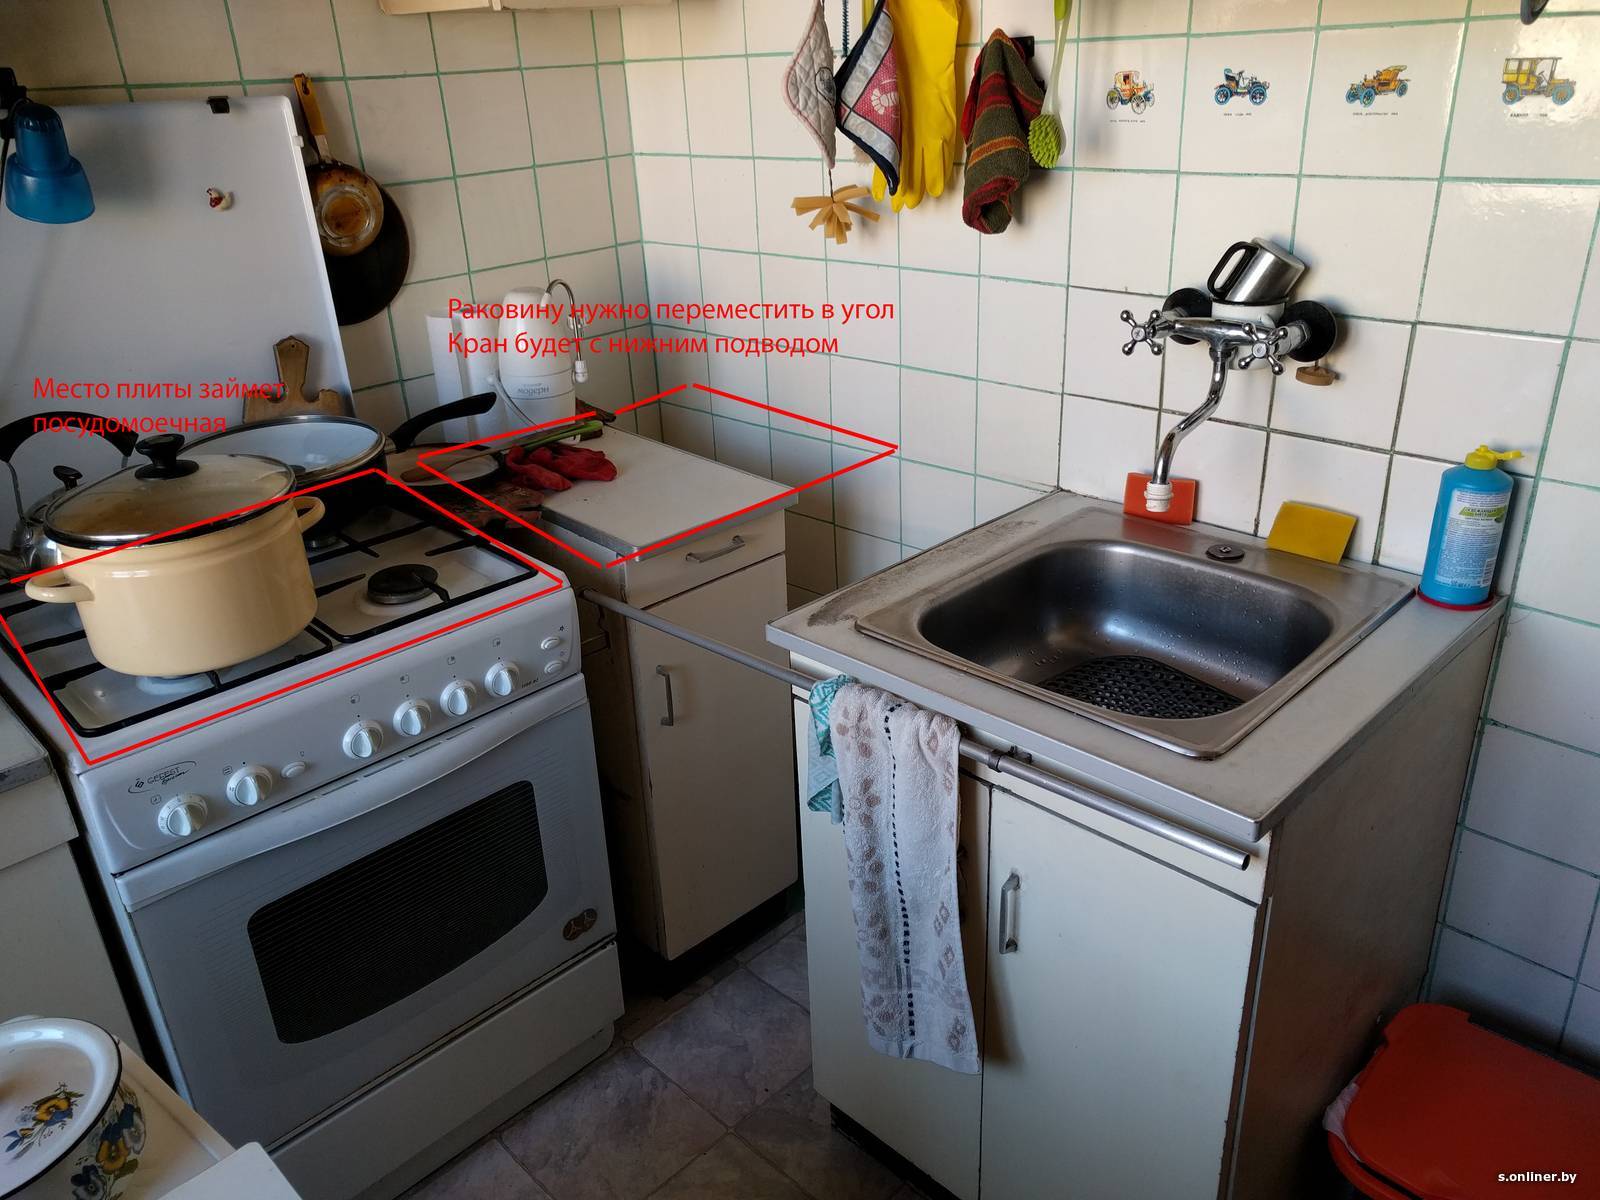  раковины на кухне: можно ли ее перенести и как?